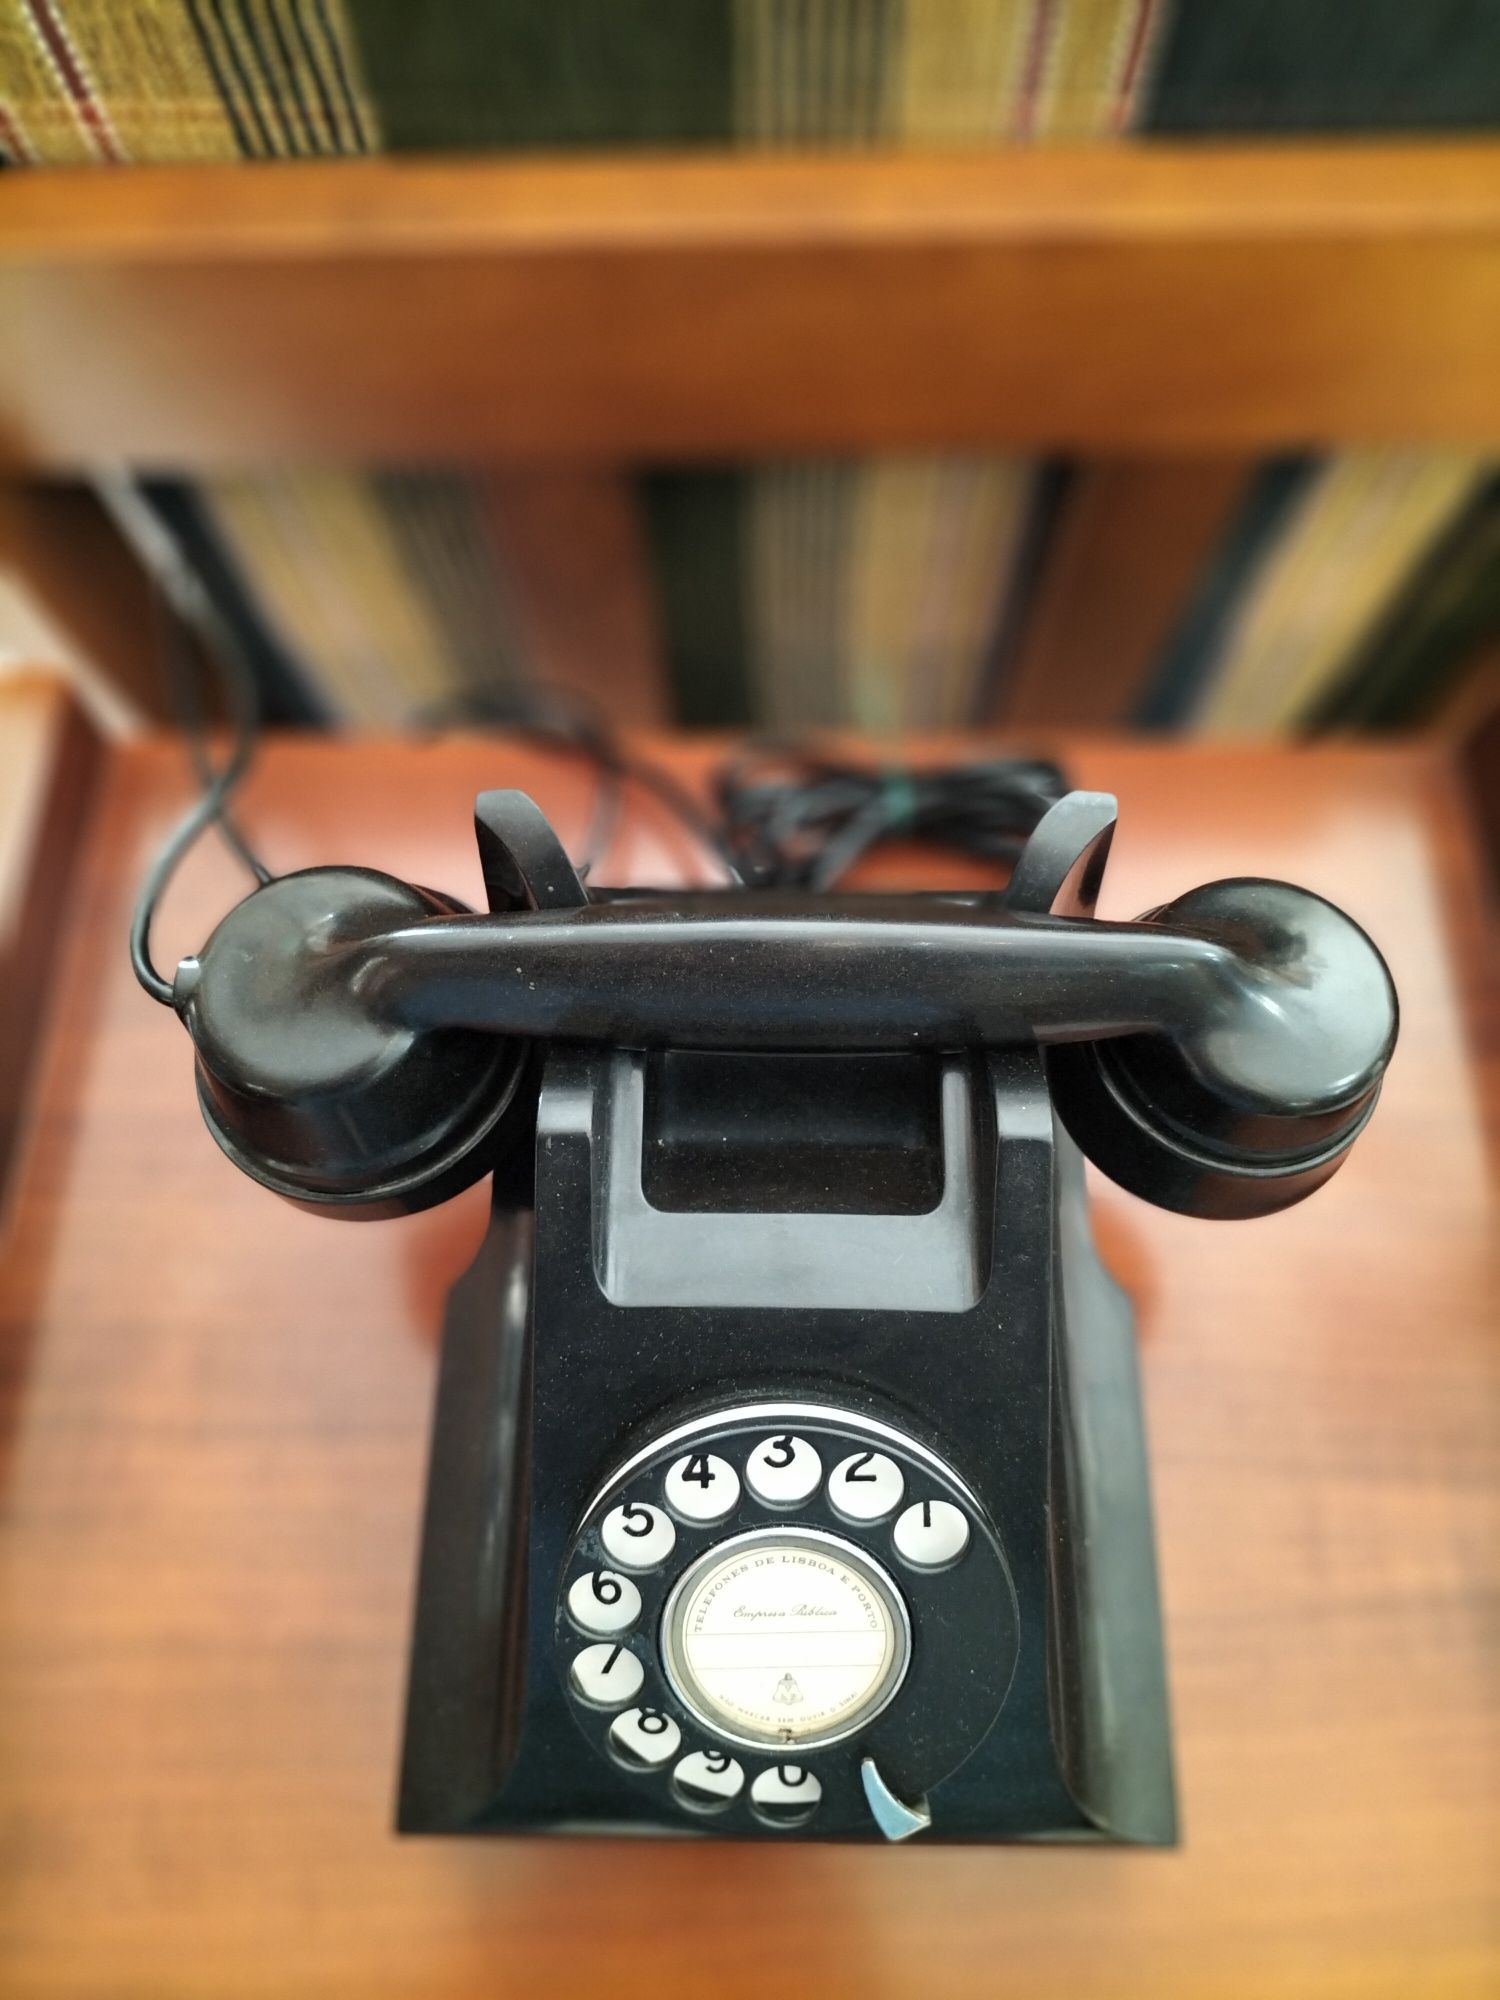 Telefone antigo em baquelite